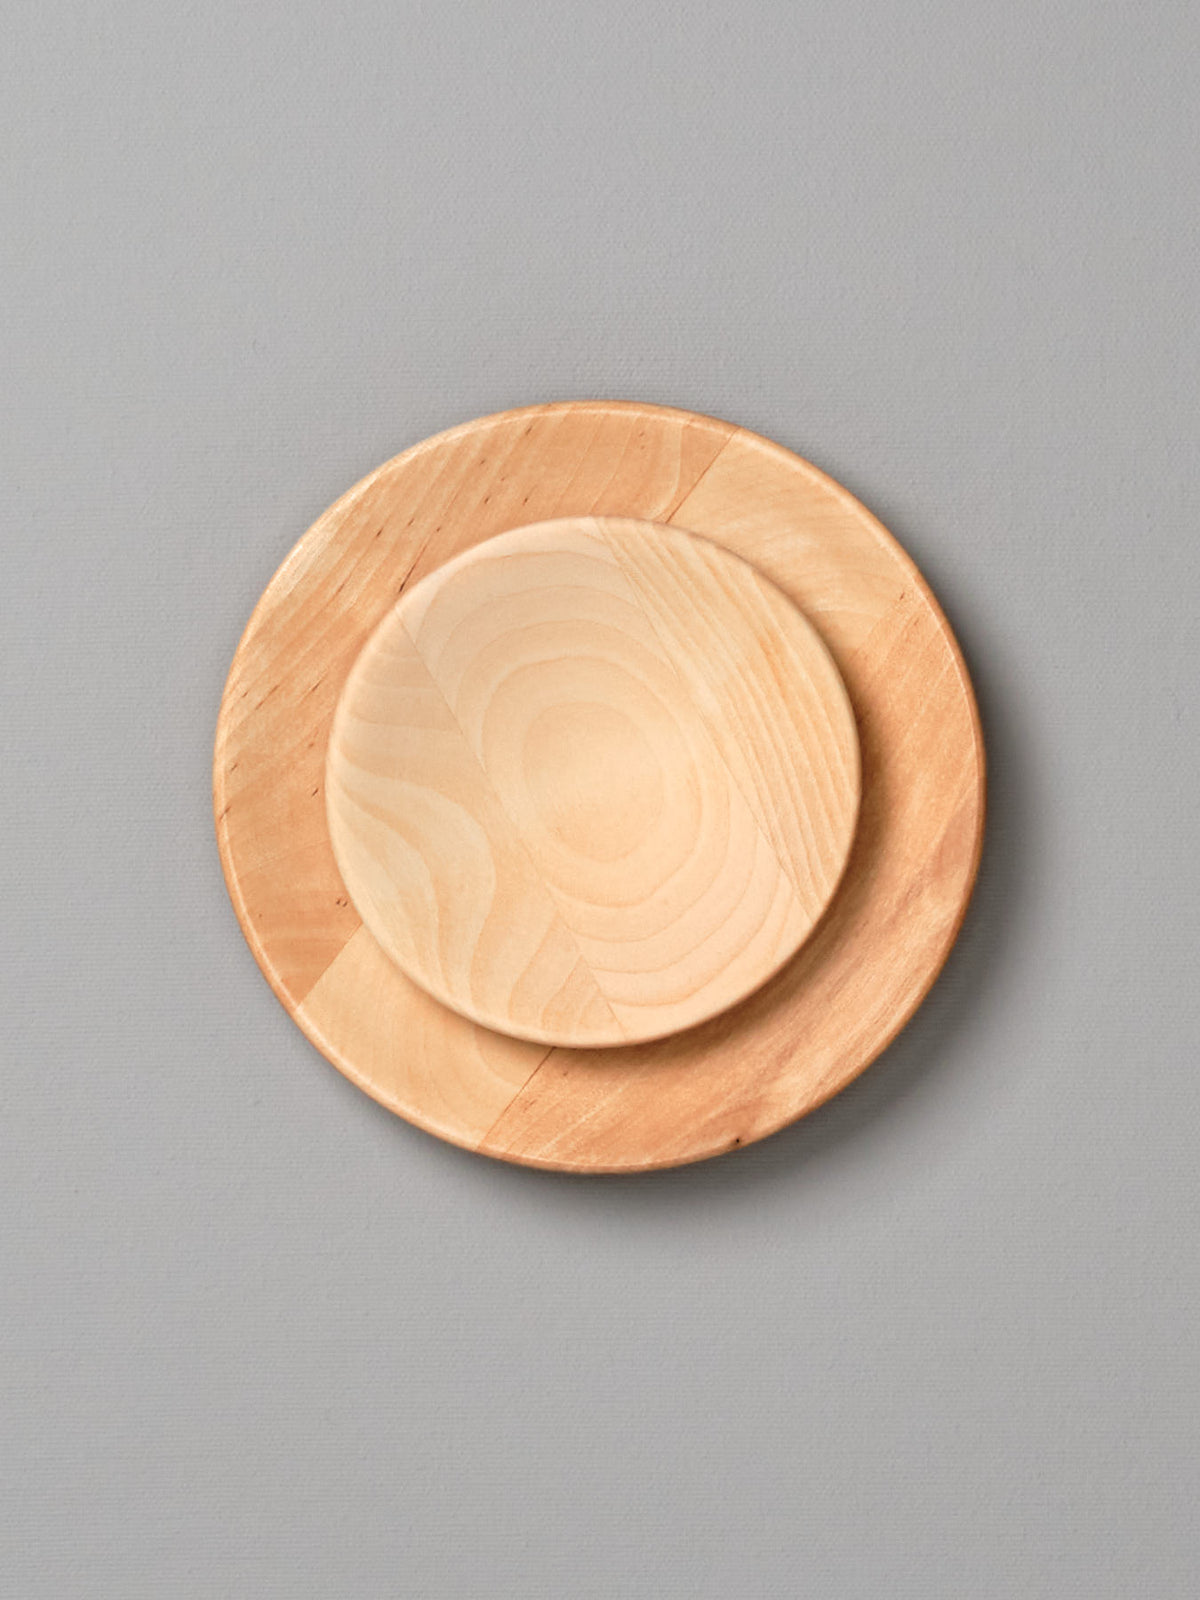 An Iris Hantverk Wooden Plate – Small on a gray background.